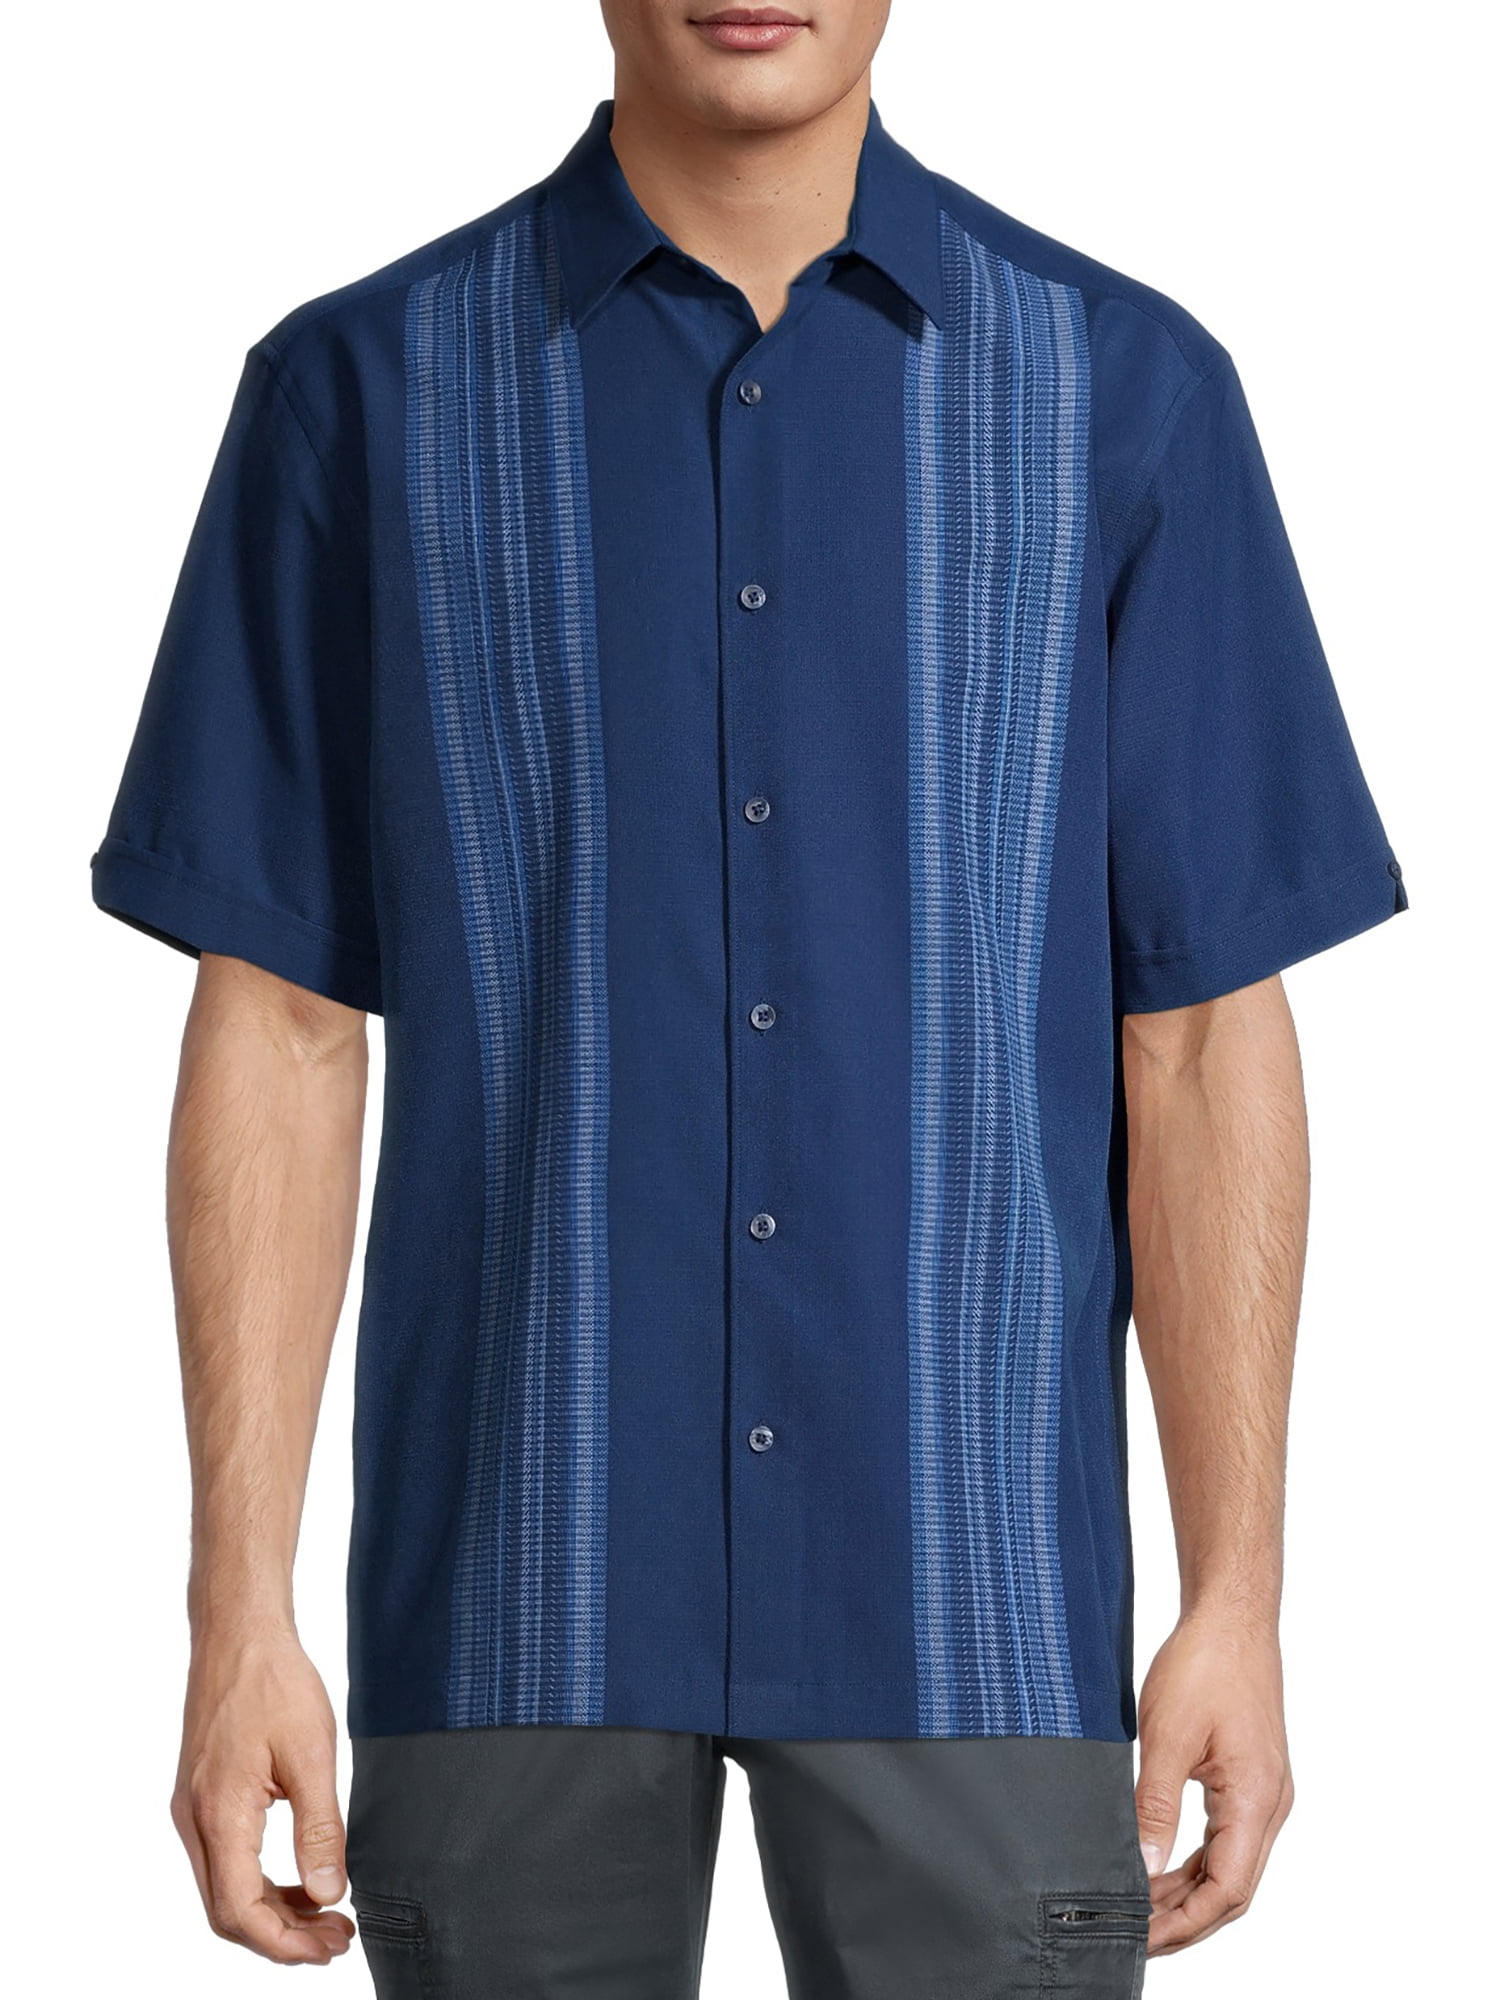 Caf Luna Men's Short Sleeve Panel Woven Shirt - Walmart.com